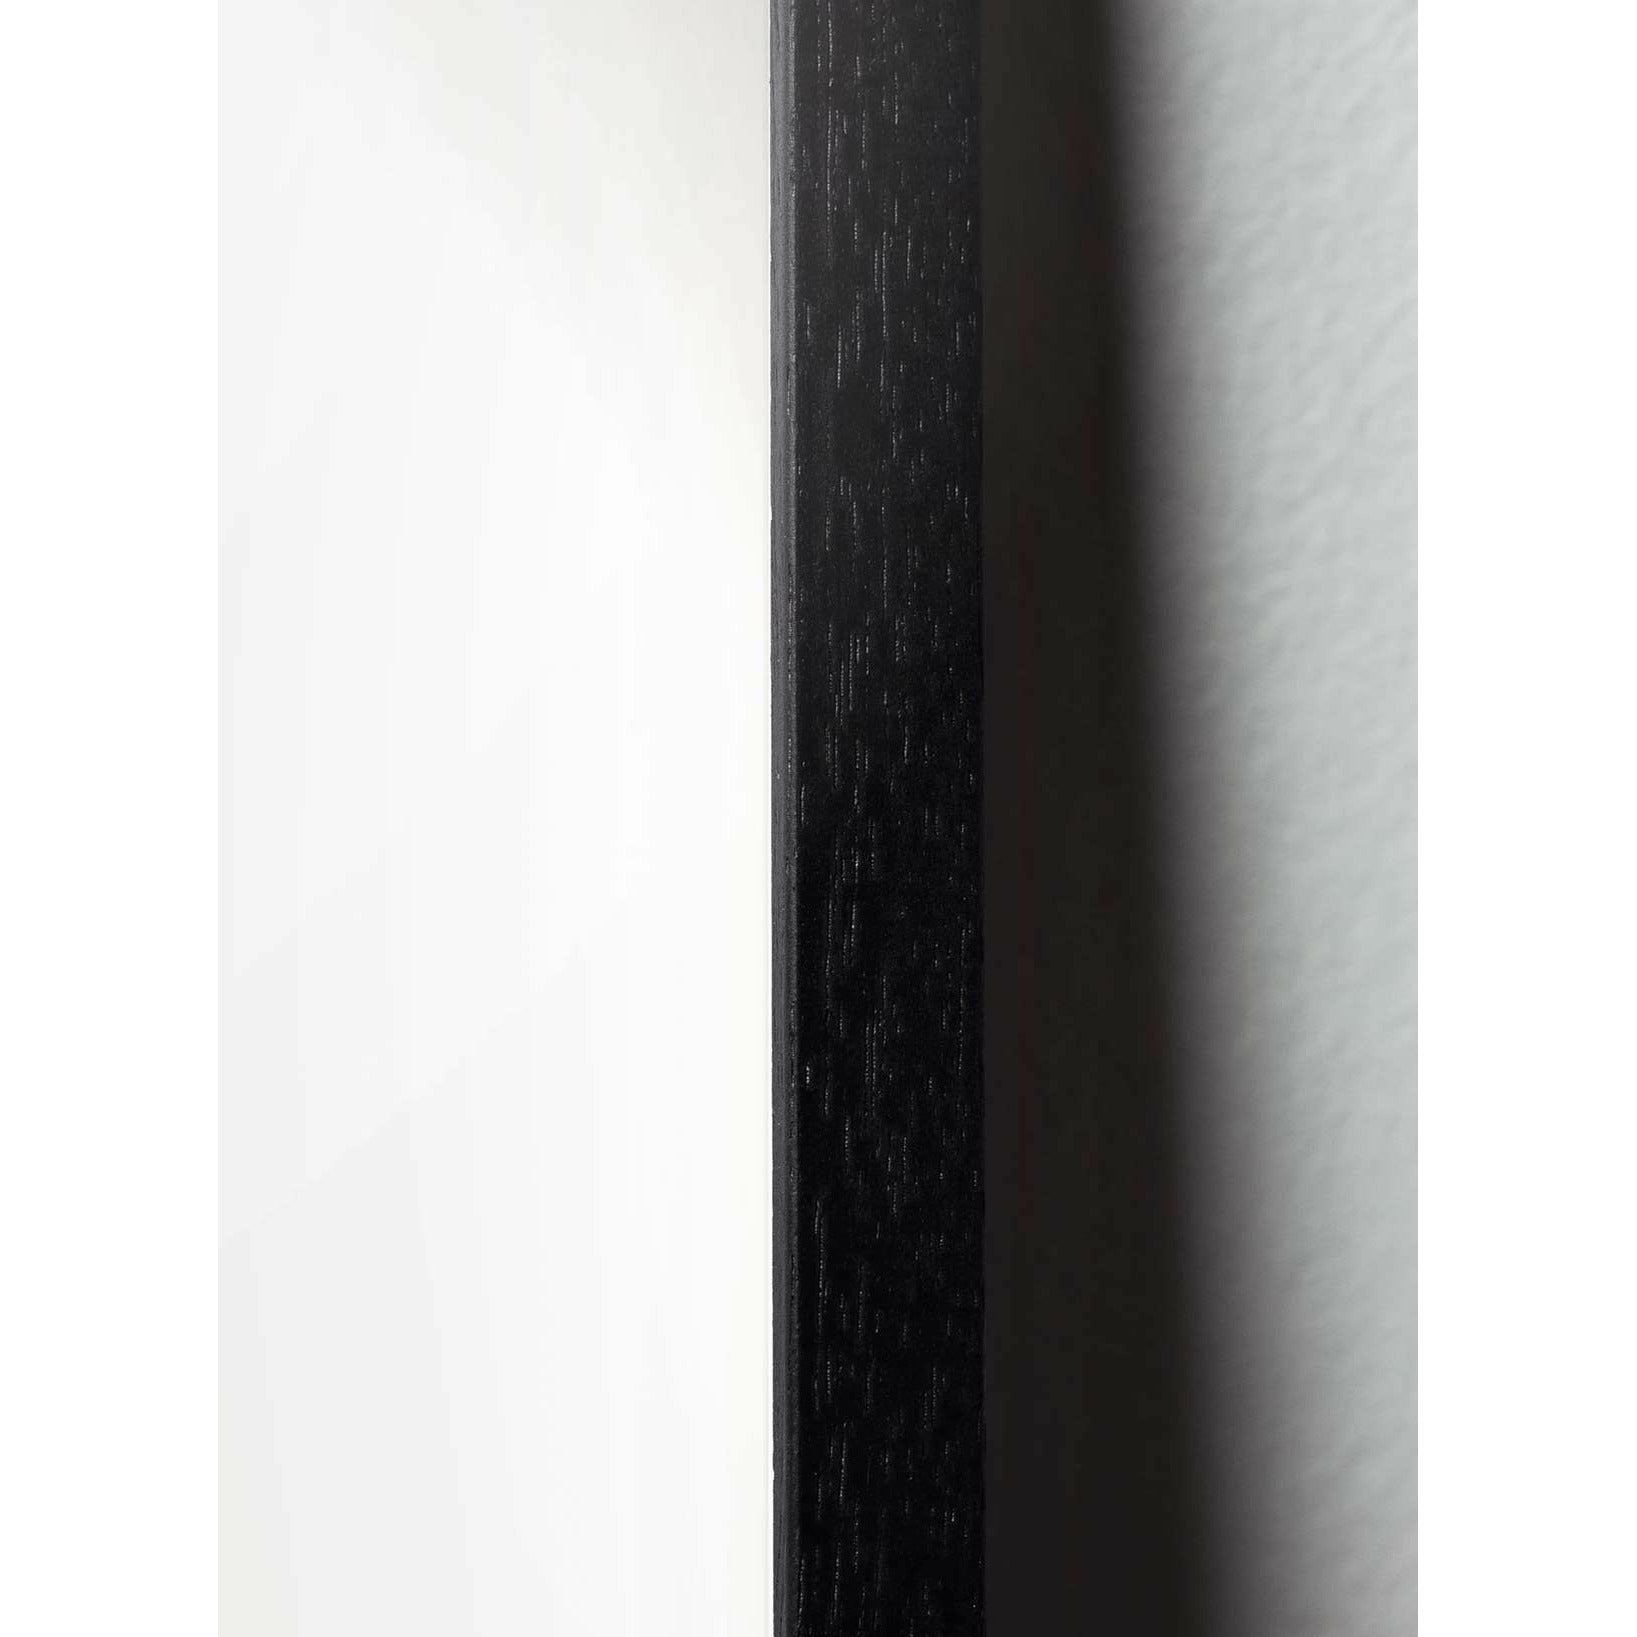 Póster de línea Swan de creación, marco en madera lacada negra 50x70 cm, fondo azul